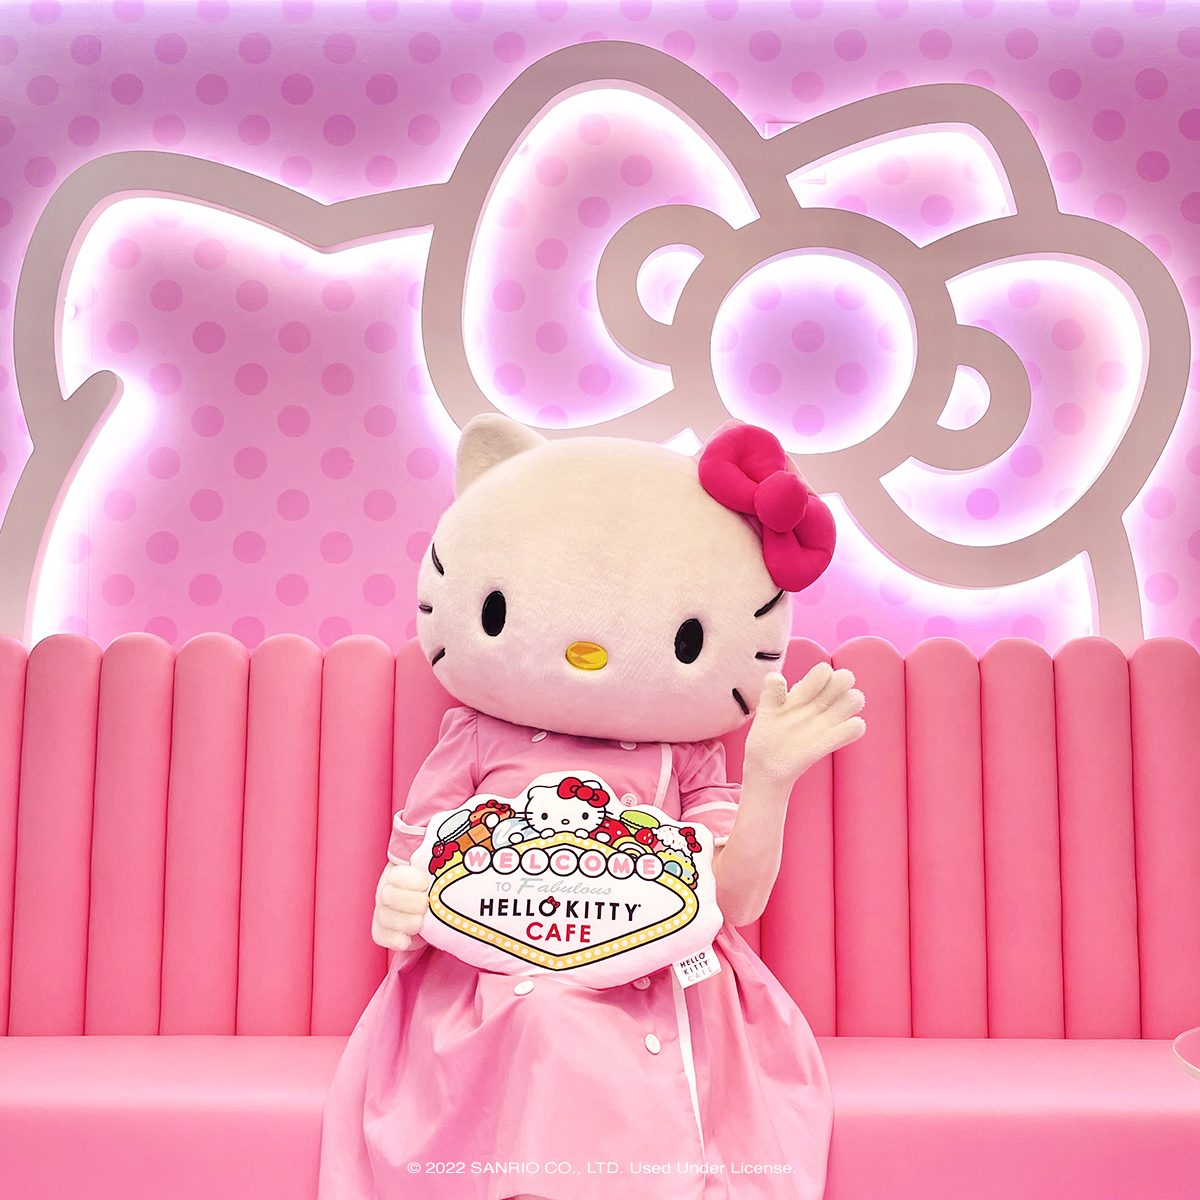 Hello Kitty Cafe on X: Hello #LasVegas! 🎀 Celebrate the Grand